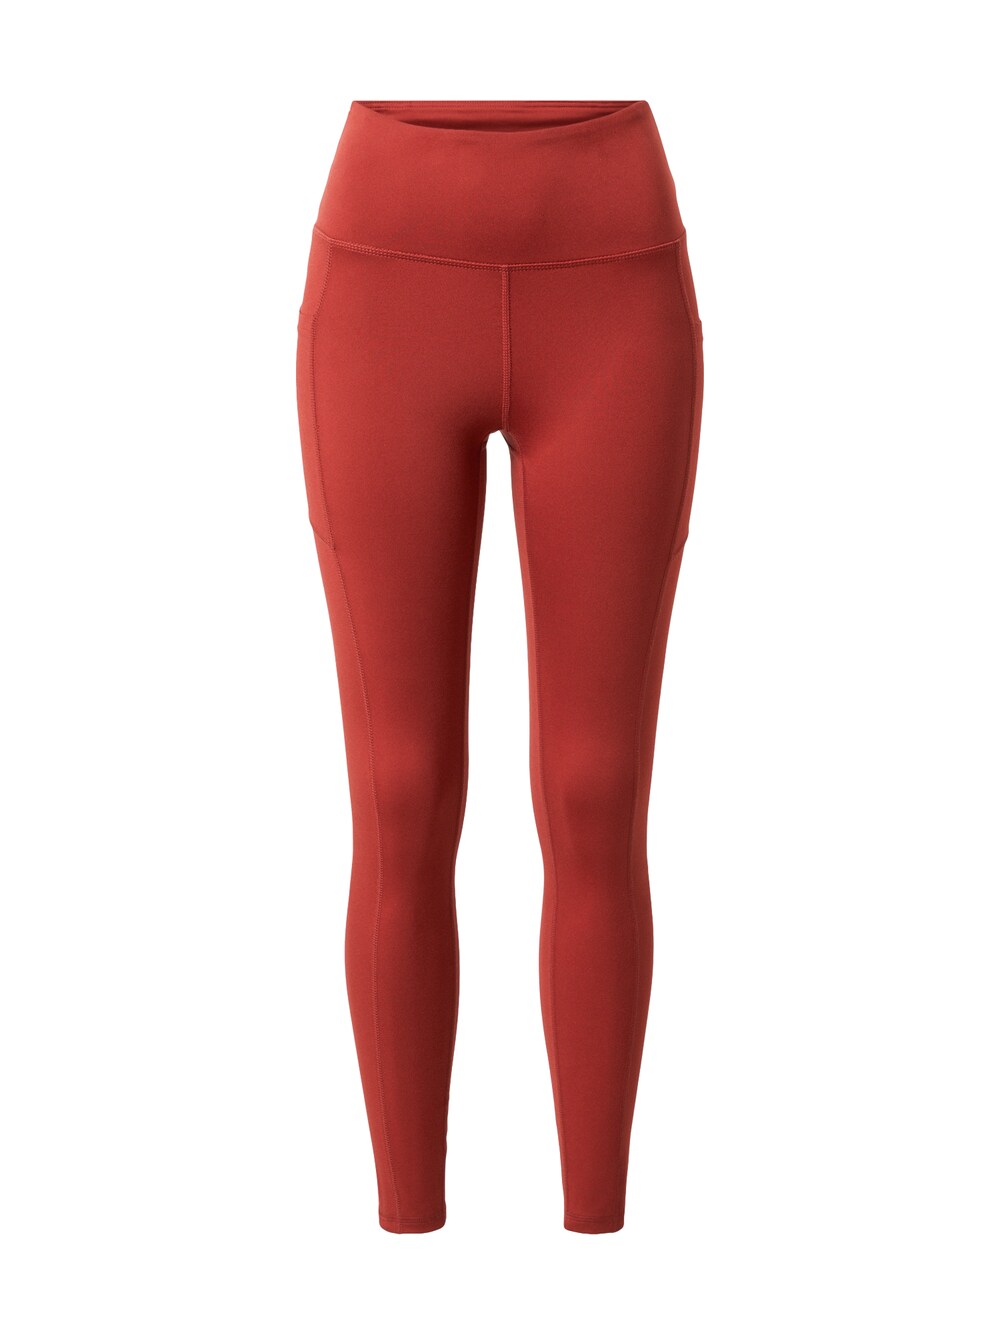 Узкие тренировочные брюки WANDERER, ржаво-красный Marika